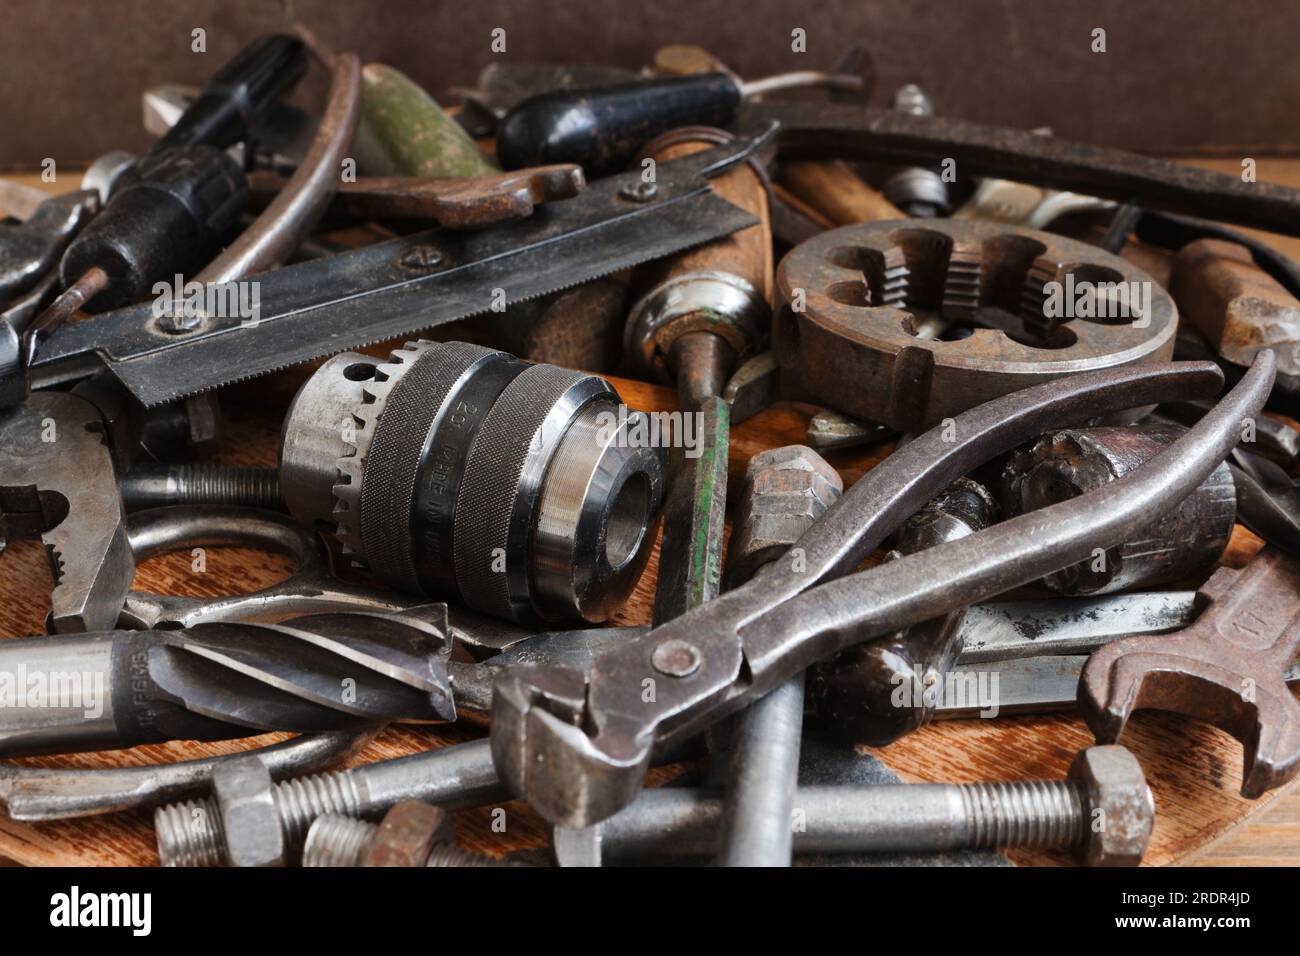 Vari utensili in metallo per lavori di montaggio e torneria Foto Stock